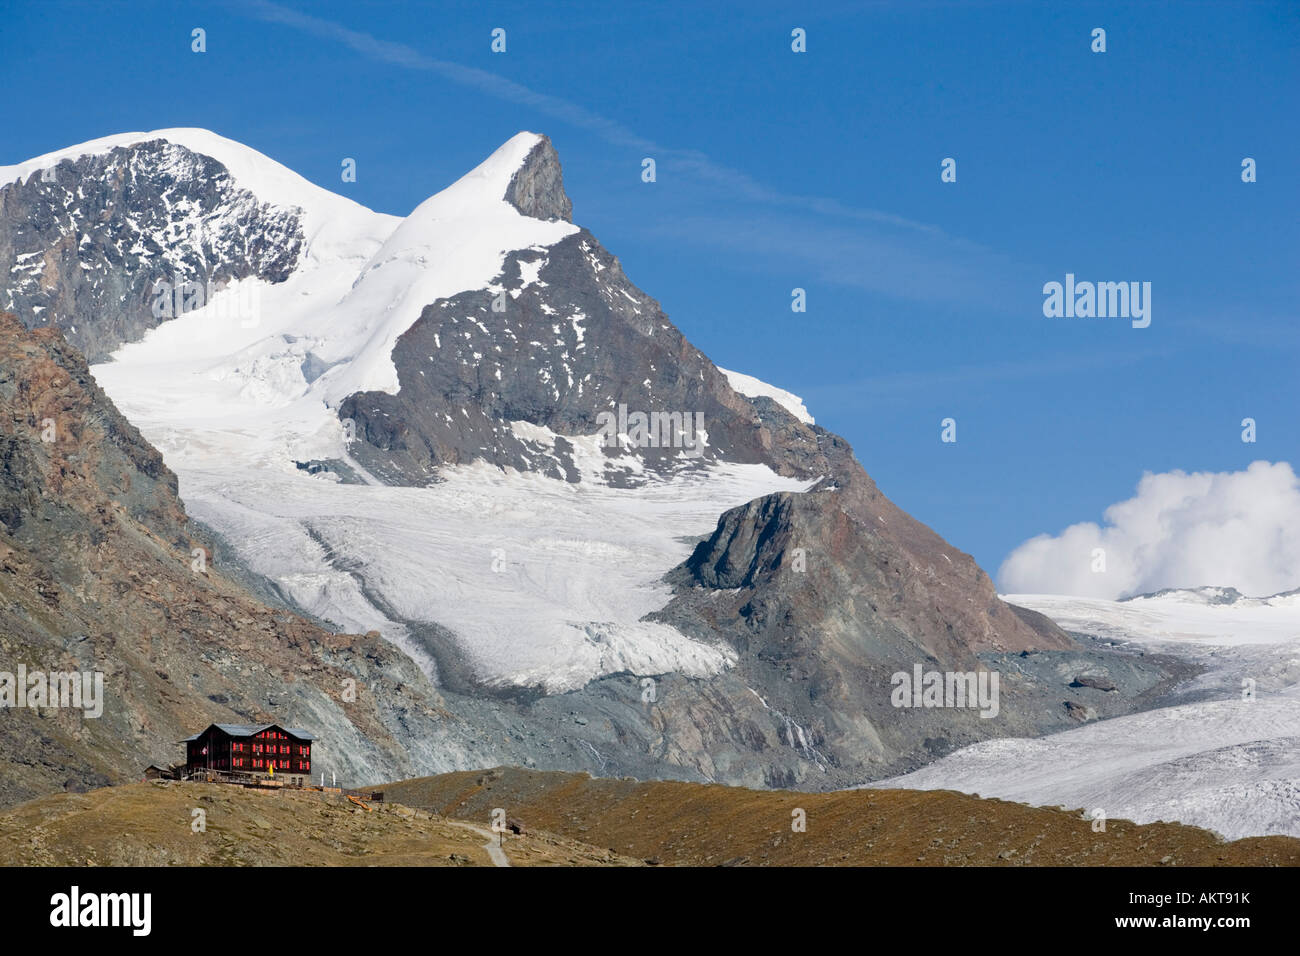 View to the Alpine hut Fluhalp with snowy Alps in background Zermatt Valais Switzerland Stock Photo